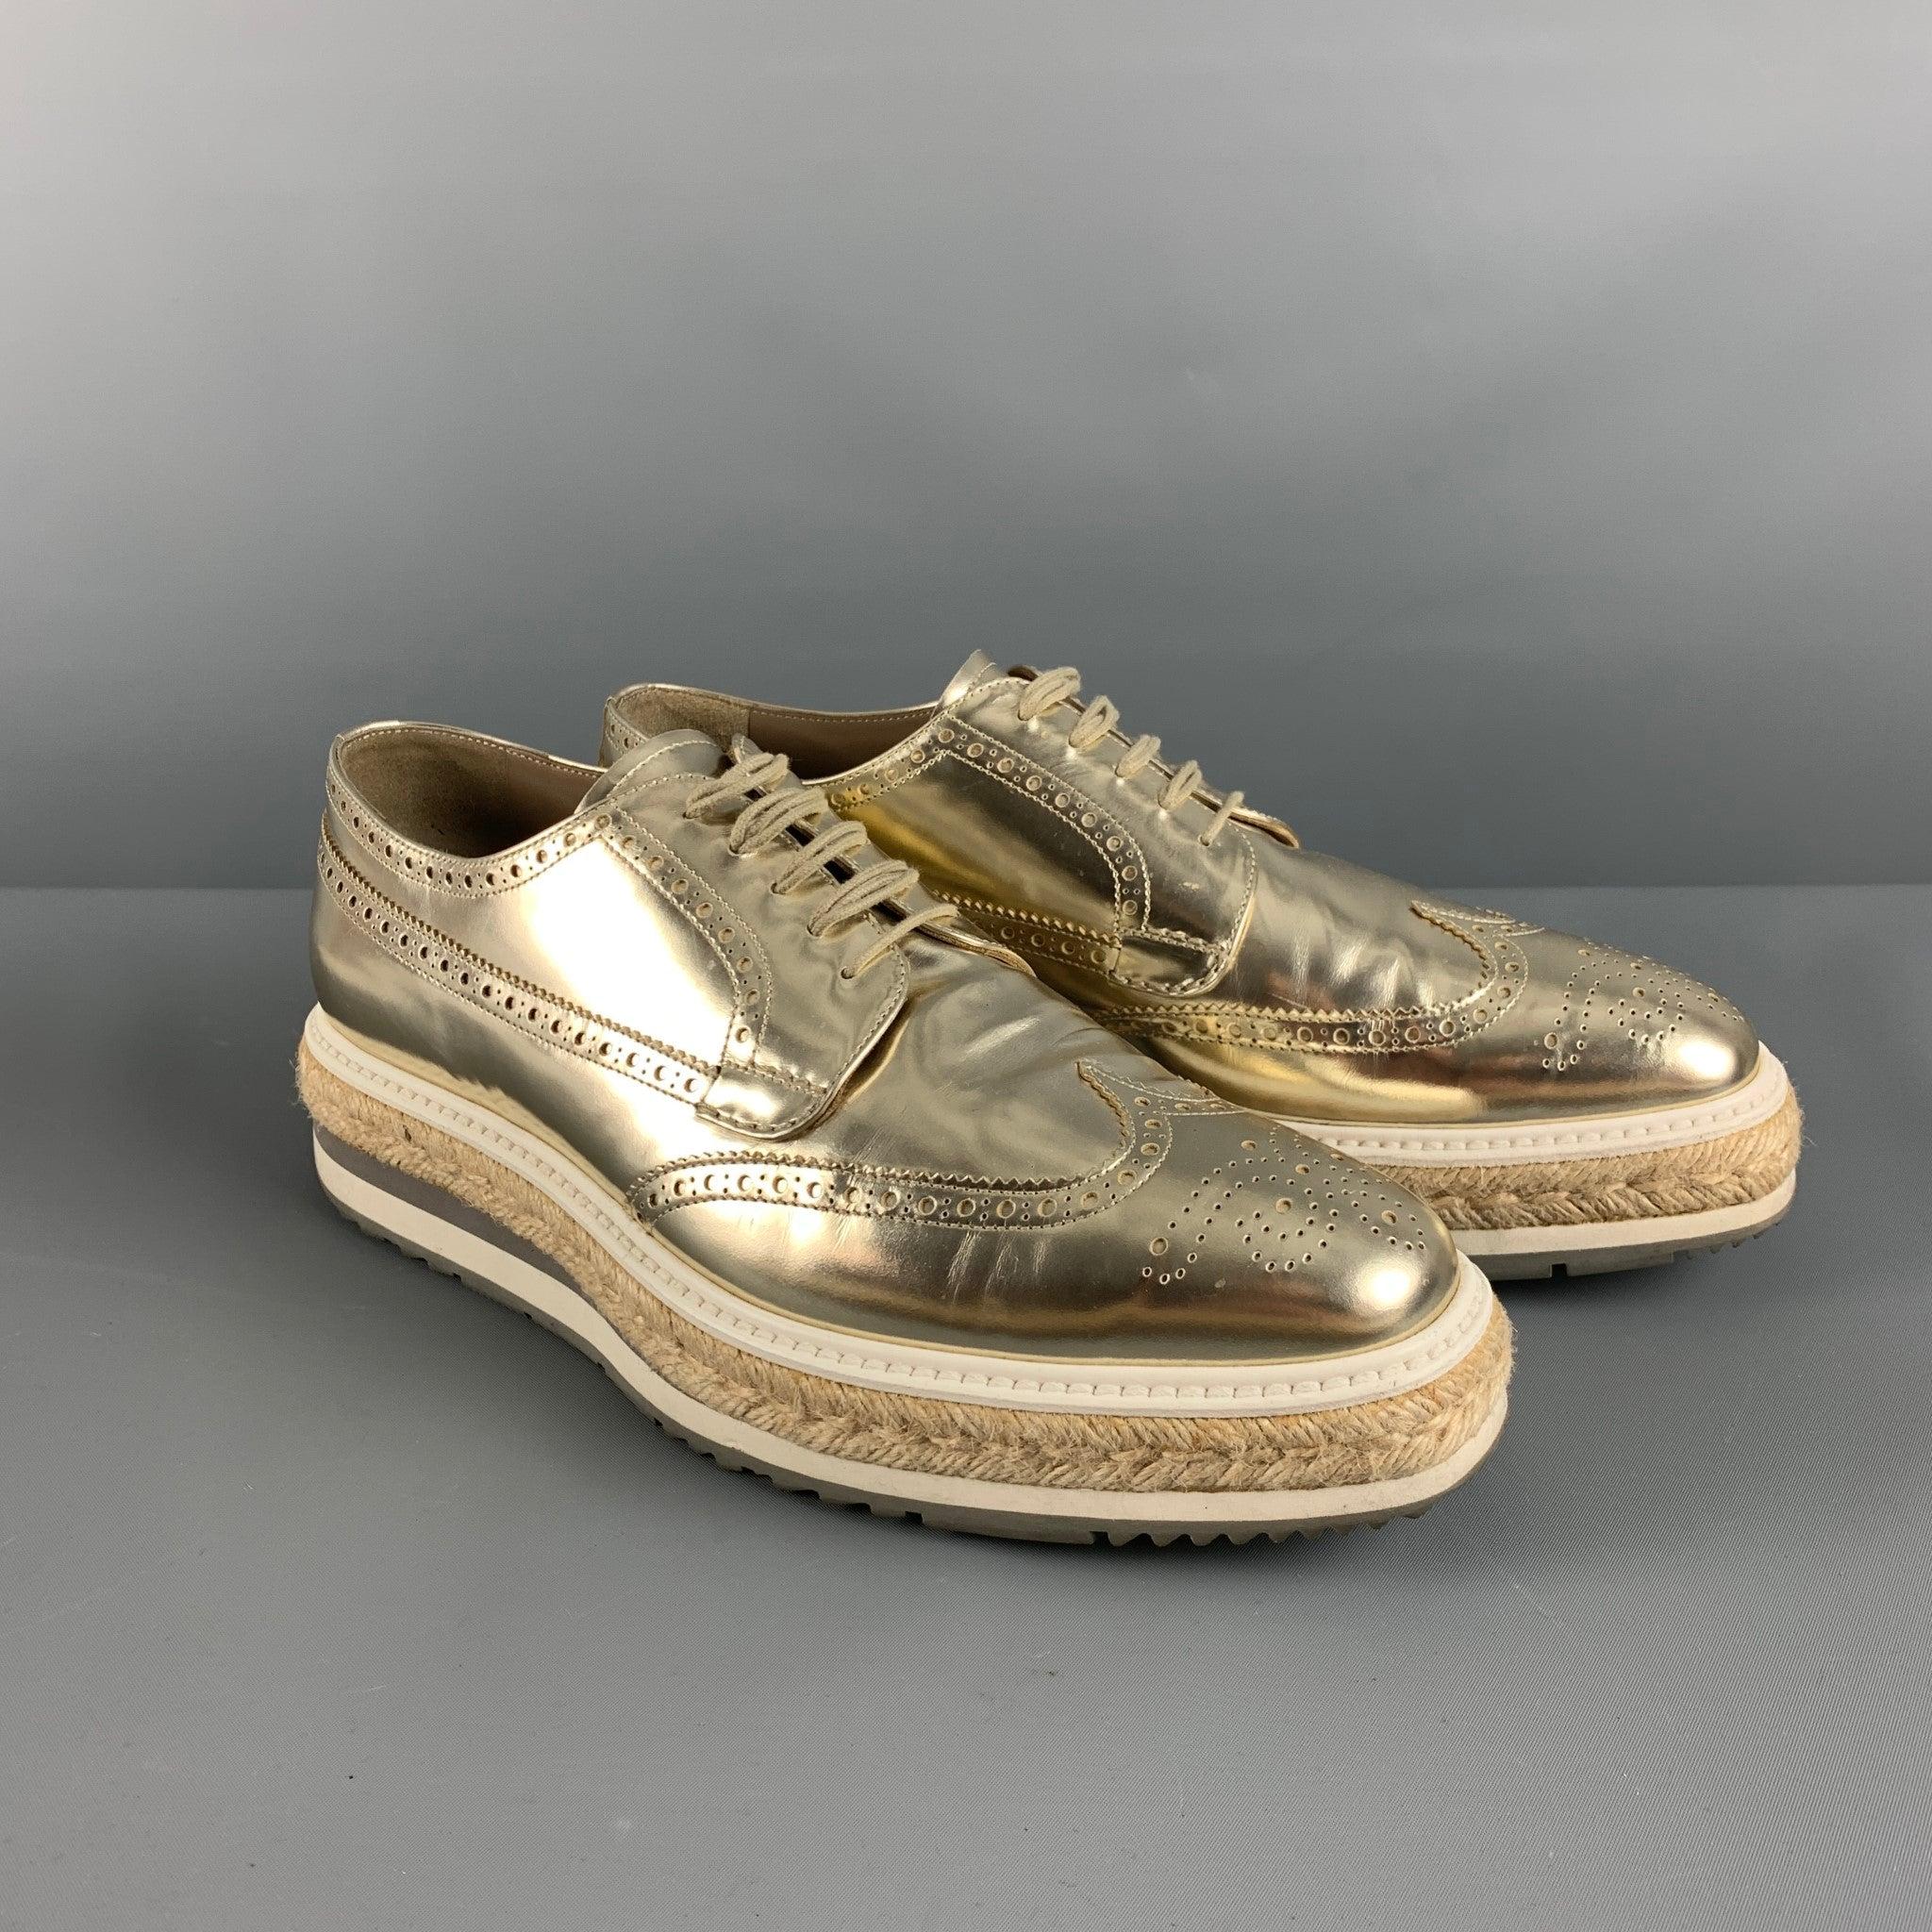 Les chaussures PRADA sont en cuir perforé métallisé doré et présentent un style à bouts papillons, une plateforme en caoutchouc garnie de jute, un bout carré et une fermeture à lacets. Fabriquées en Italie. Sac à poussière inclus. Très bon état